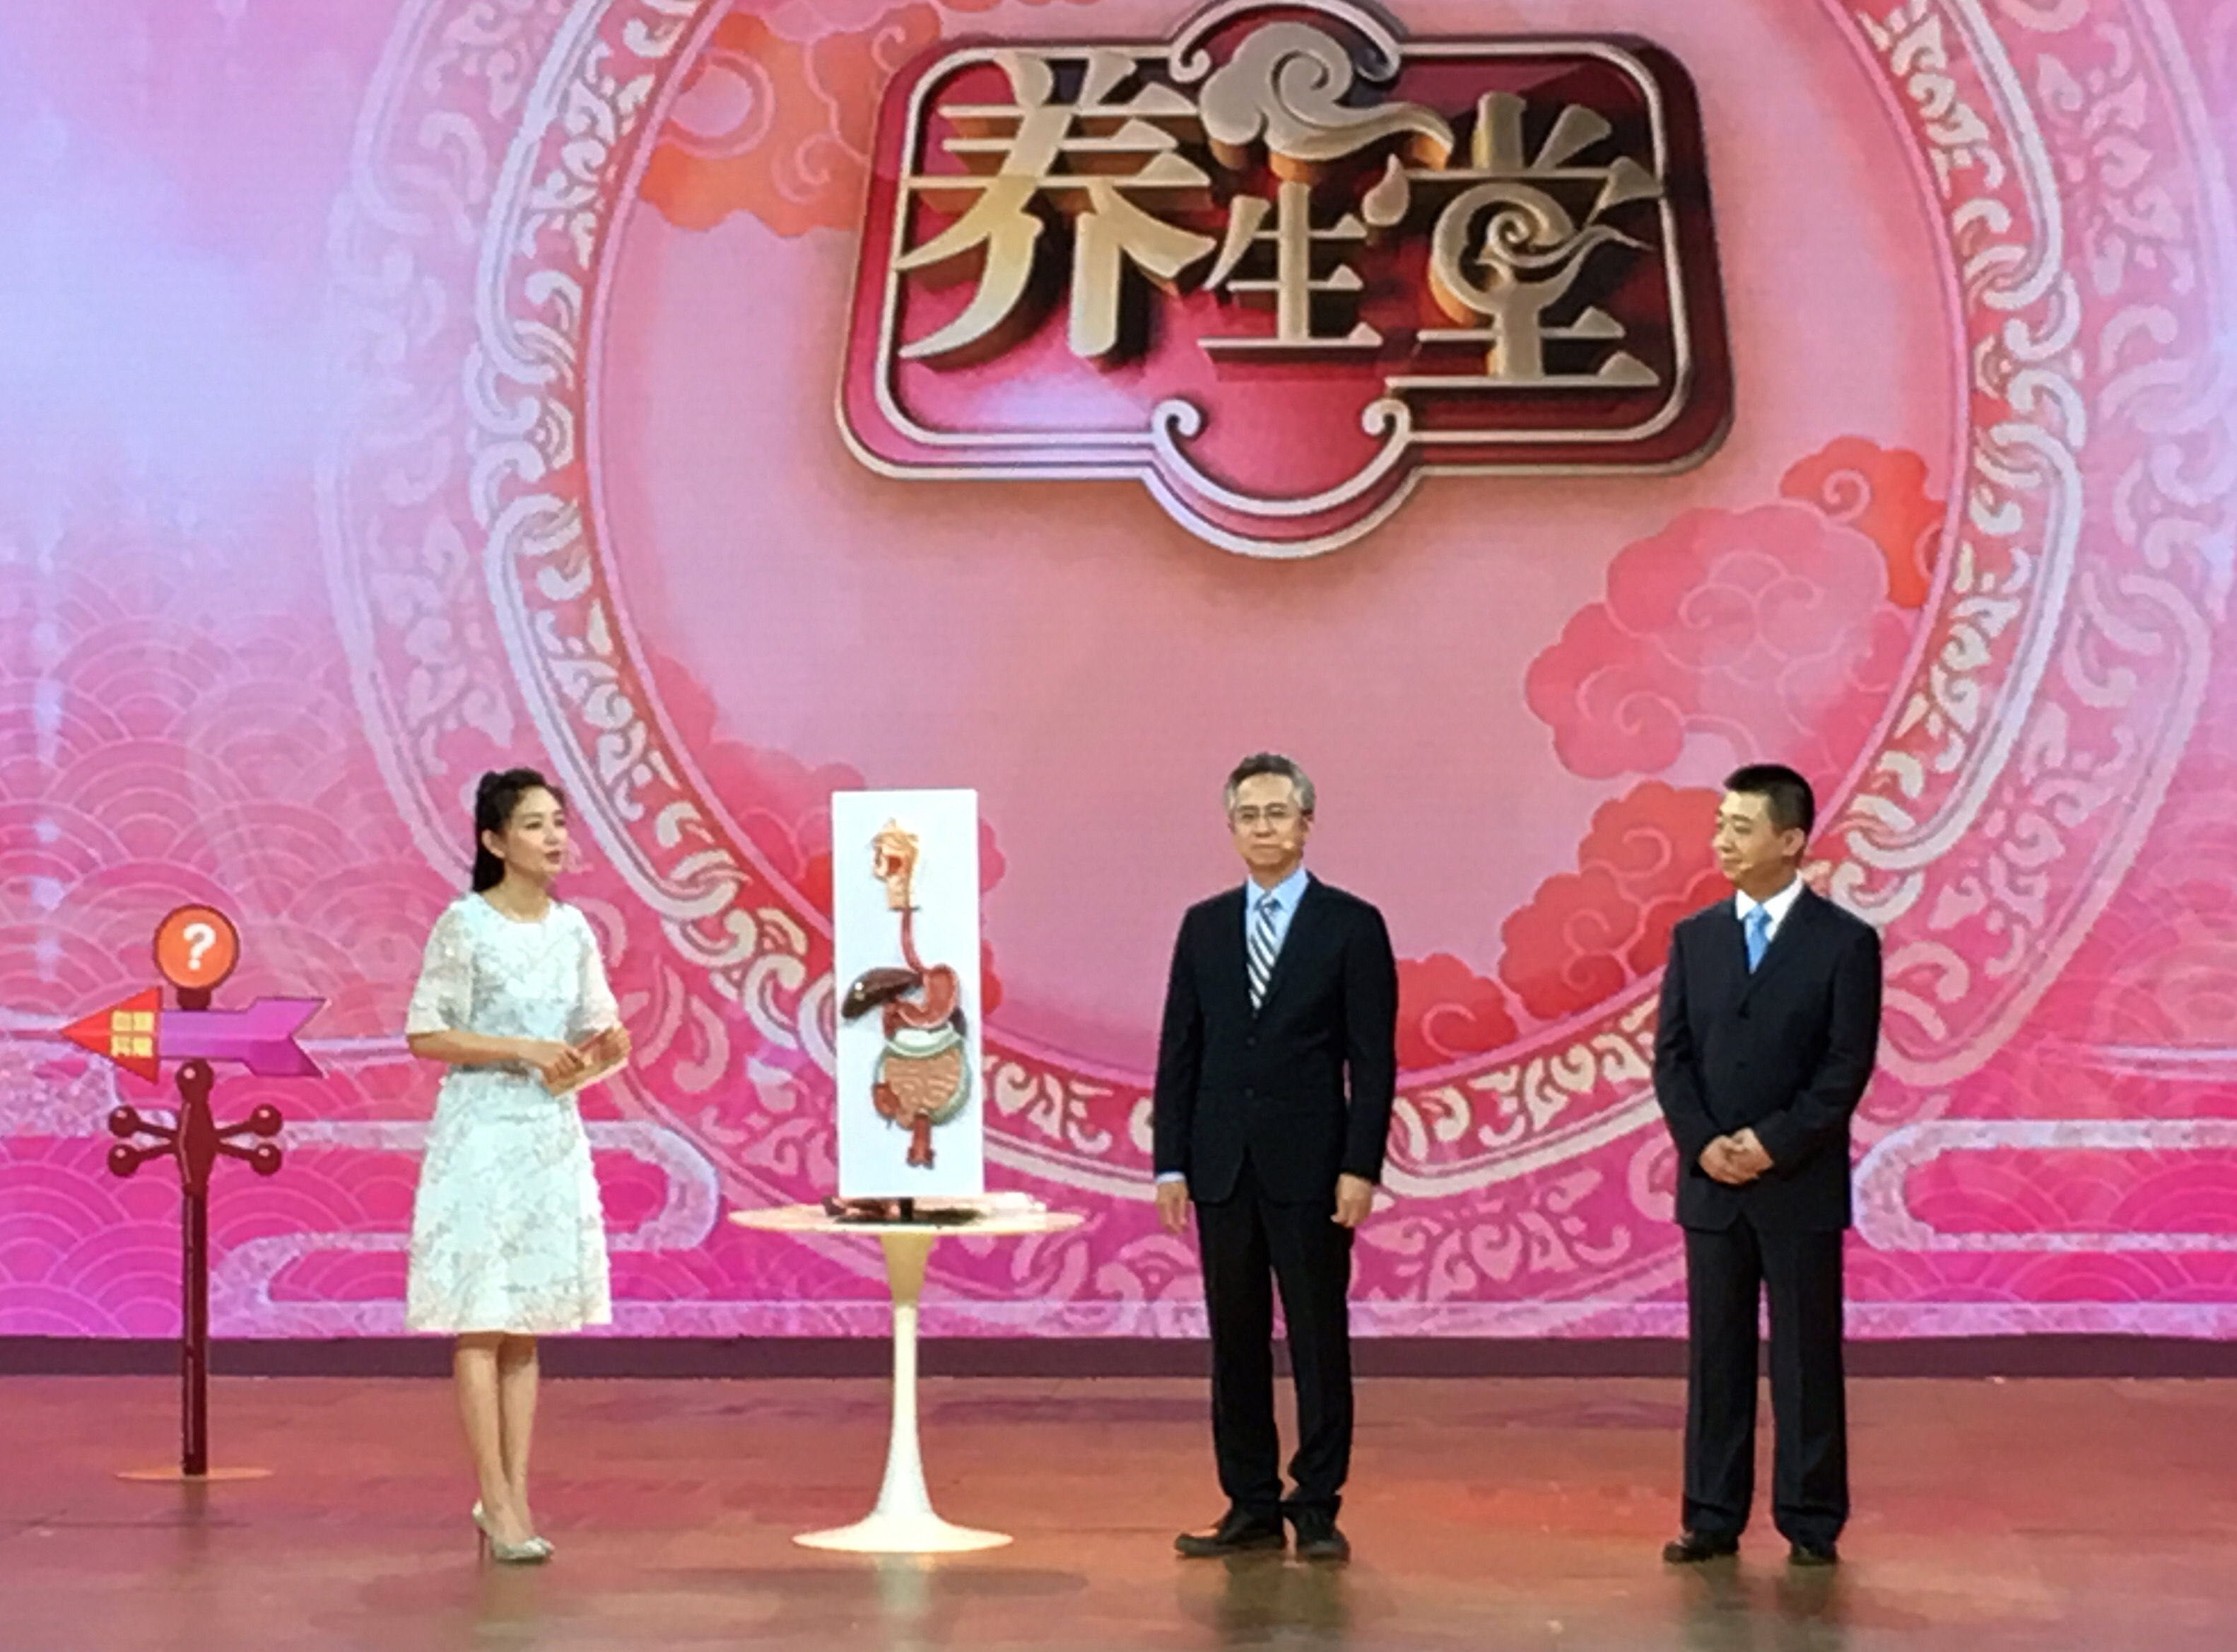 北京医院肿瘤微创治疗中心团队做客北京卫视《养生堂》栏目 